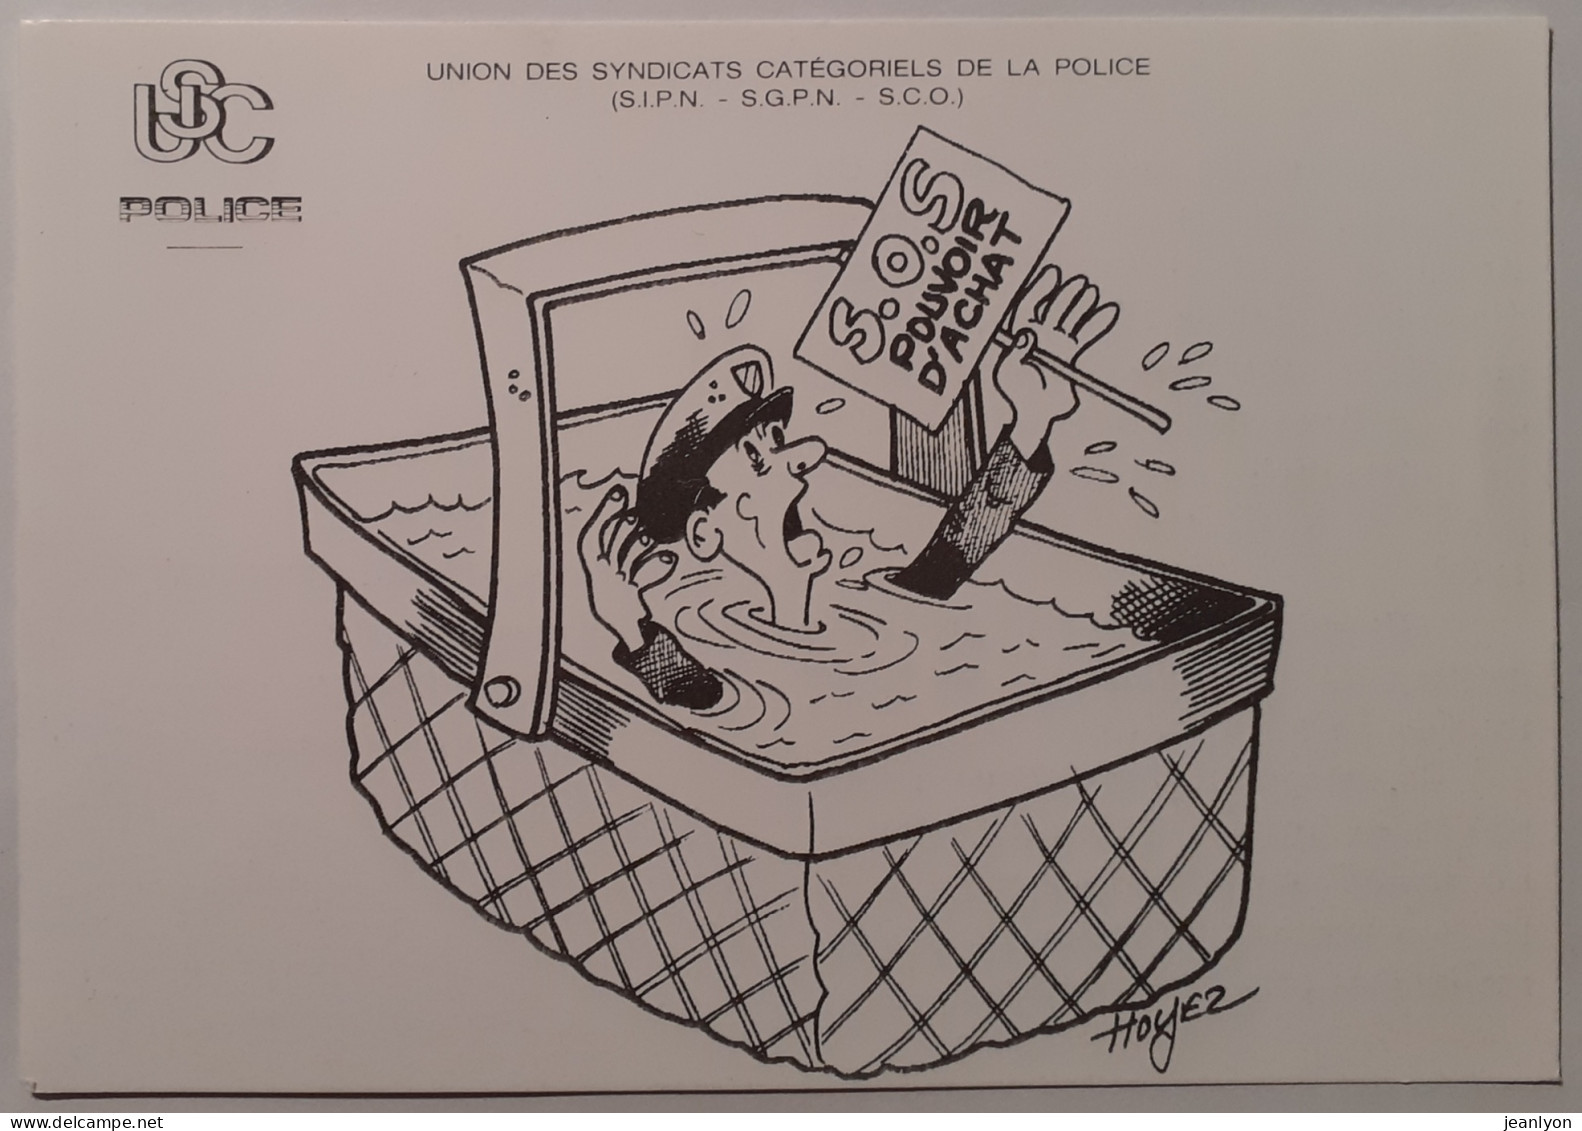 POLICE - SOS Pouvoir D'achat / Noyade Dans Un Panier - Illustrateur Hoyez - USC POLICE 1989 - Carte Genre Pétition - Police - Gendarmerie